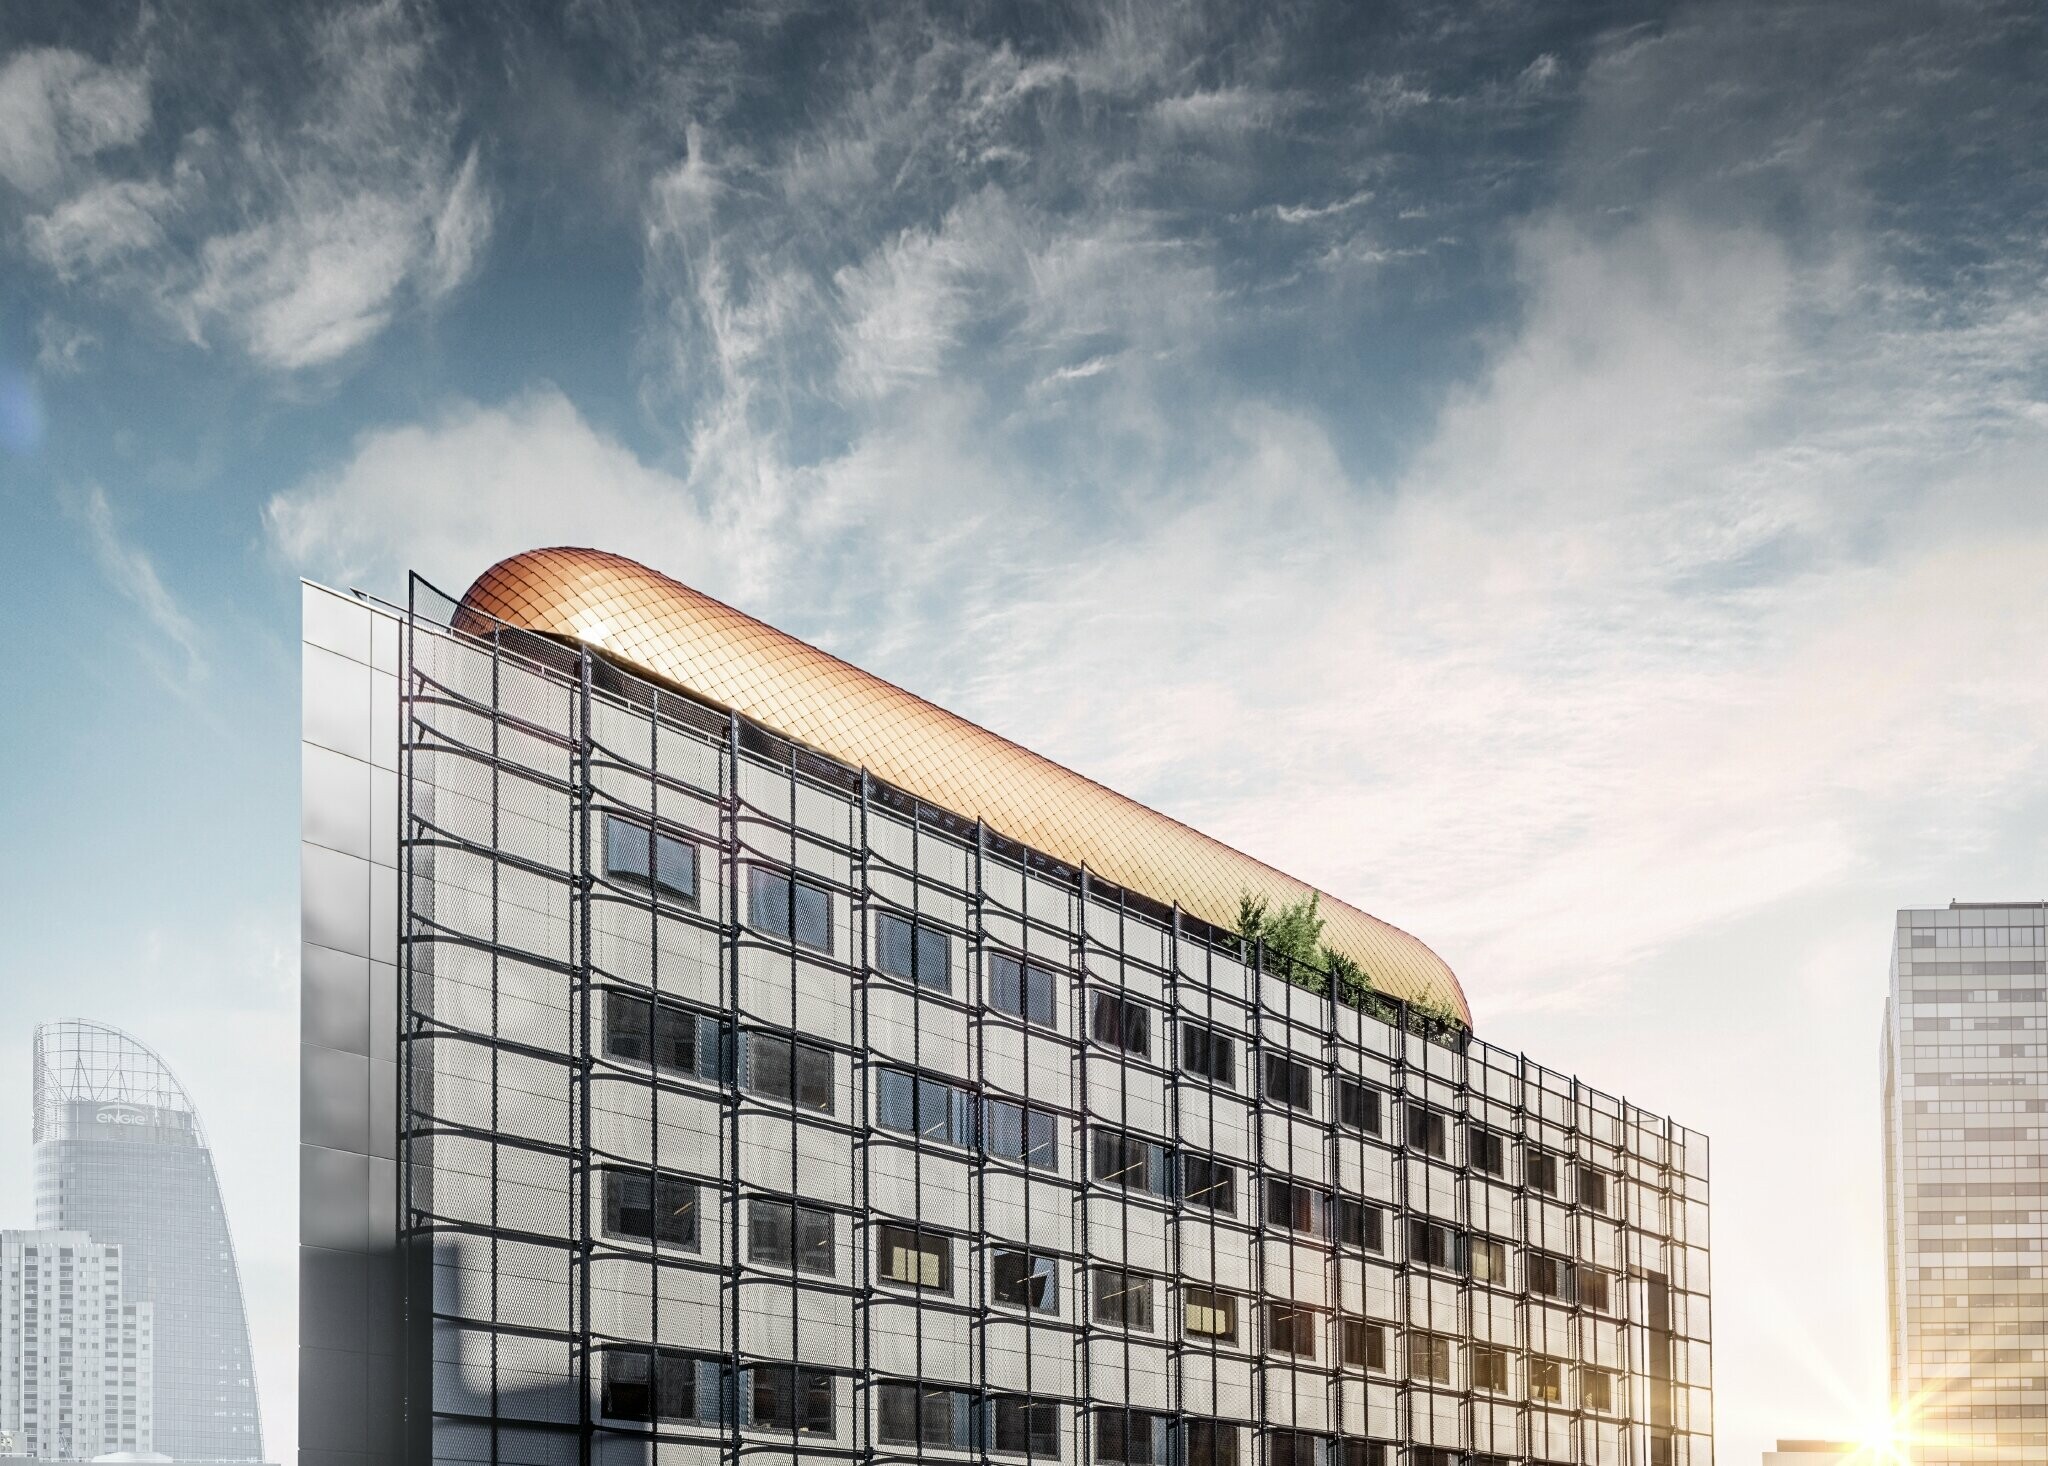 Palazzo per uffici Blackpearl a Parigi con una nuova struttura rivestita con scaglia PREFA 29 x 29 color rame